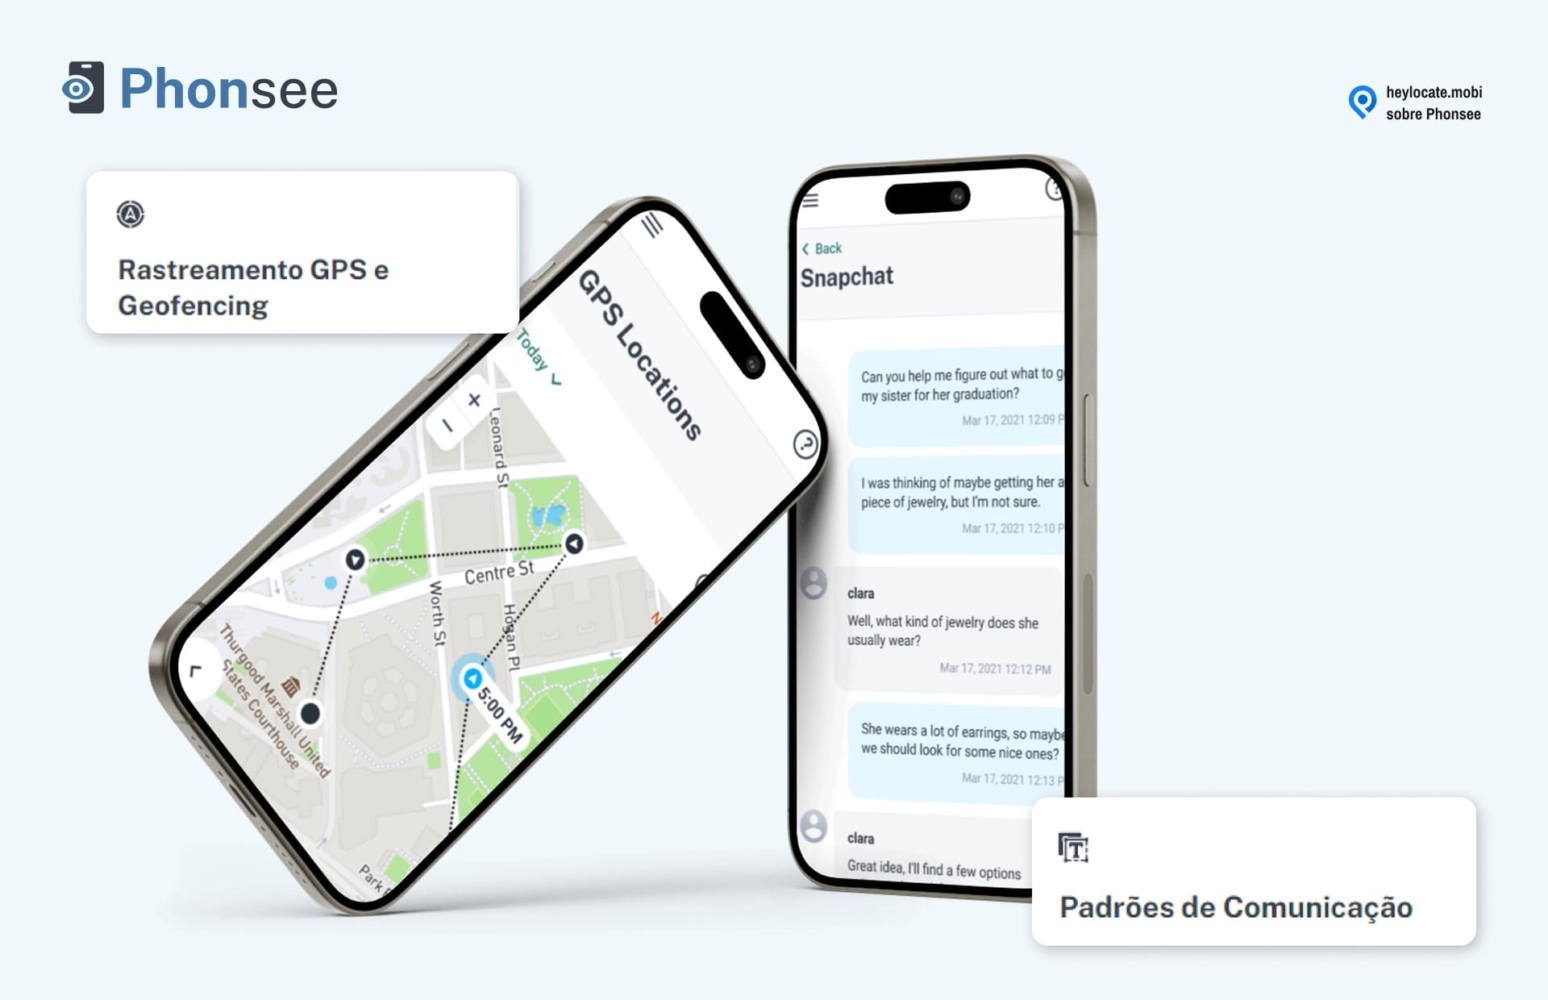 Ilustração de um smartphone exibindo um aplicativo de rastreamento GPS com um mapa e pinos de localização no lado esquerdo, e outro smartphone mostrando um aplicativo de mensagens com uma conversa no lado direito, representando os recursos do serviço de monitoramento de comunicação e rastreamento móvel Phonsee.